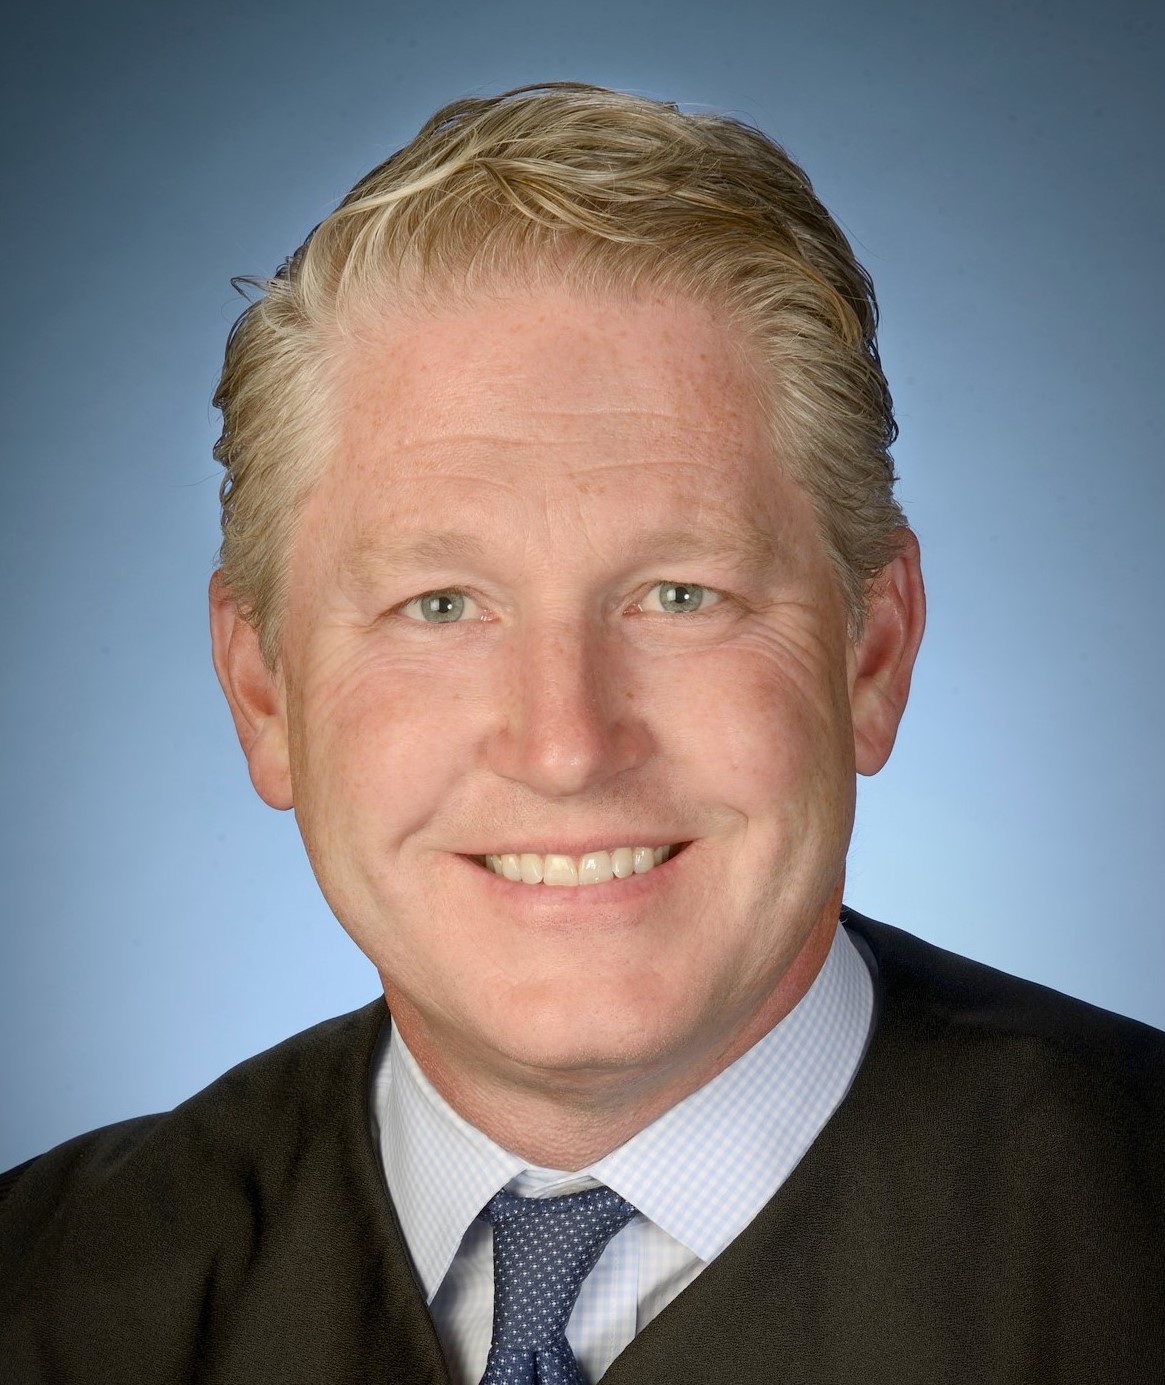 District Judge Carl J. Nichols